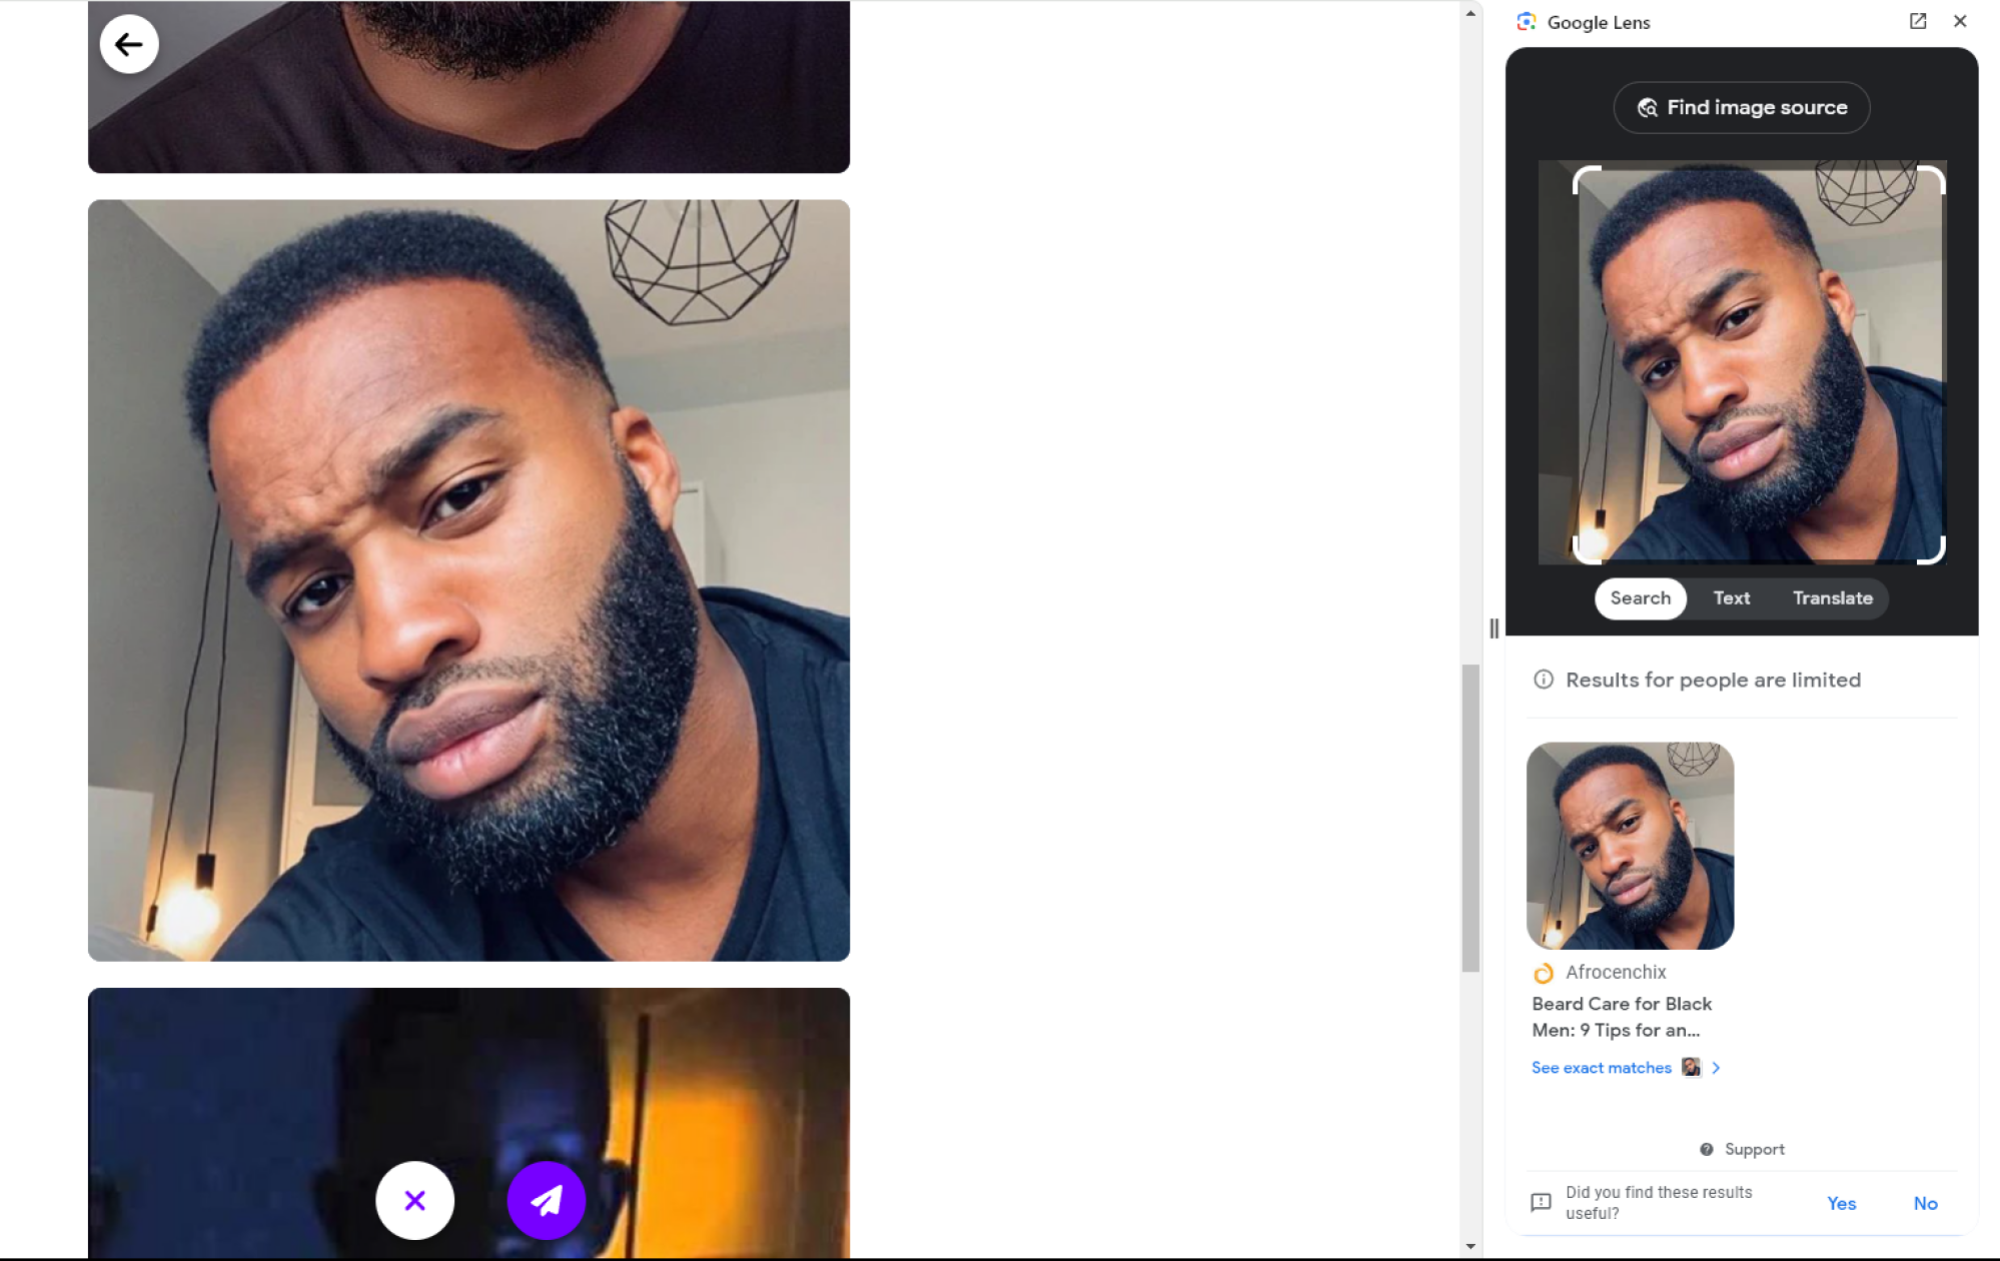 Profil utilisateur avec photos - Un profil utilisateur sur Duolicious montrant plusieurs photos d'un homme barbu, avec la possibilité de trouver la source de l'image à l'aide de Google Lens sur le côté droit de l'écran.